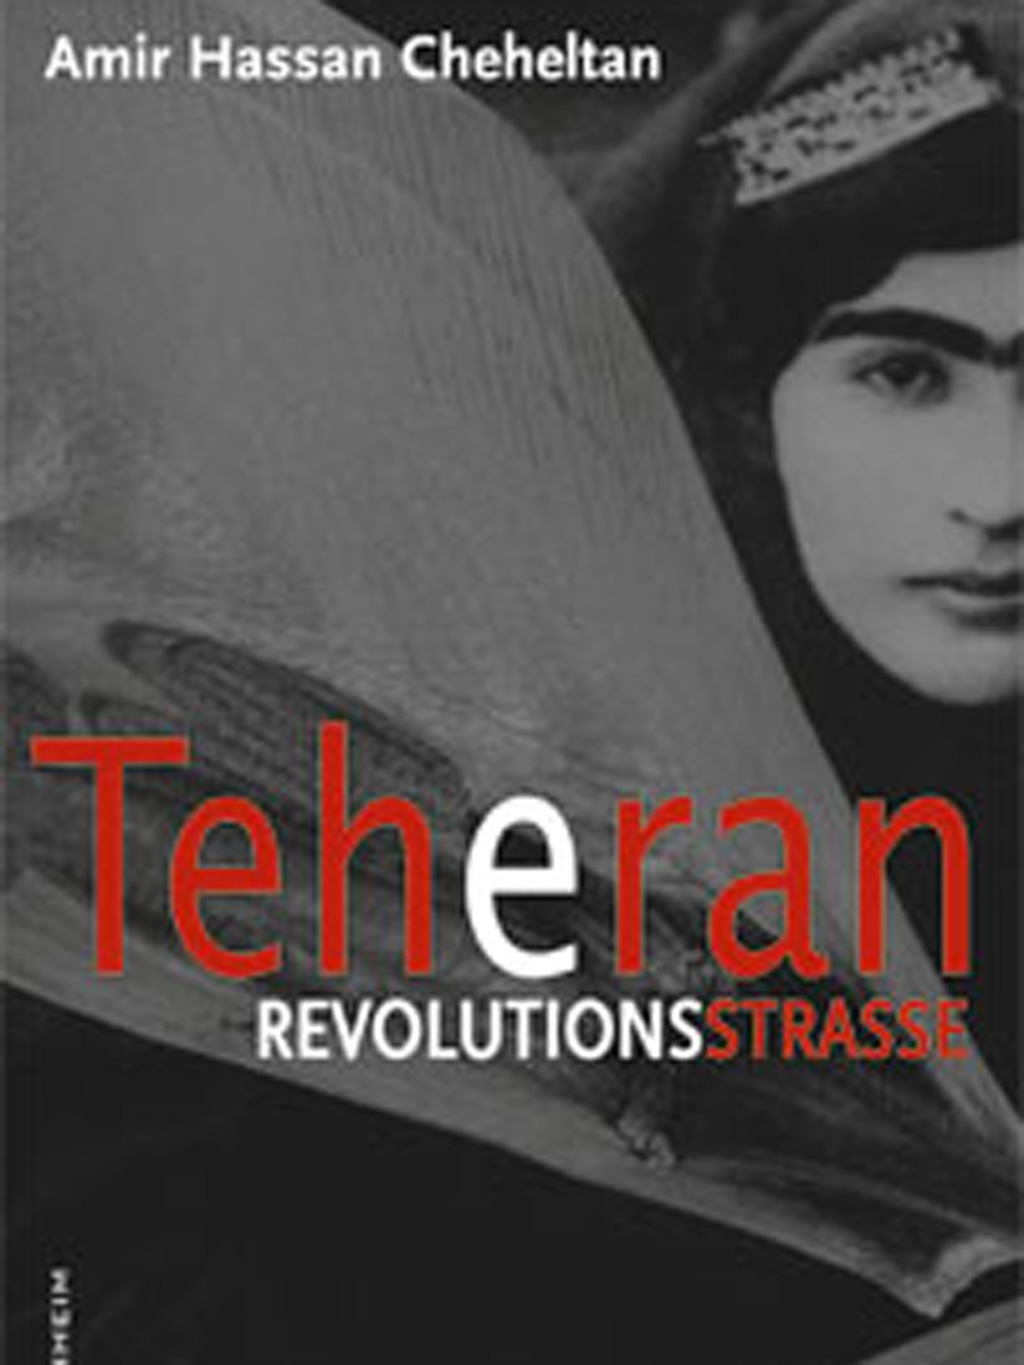 Teheran Revolutionsstrasse (Gebundene Ausgabe) von Amir Hassan Cheheltan (Autor), Susanne Baghestani (Übersetzer). P. Kirchheim Verlag, München 2009.